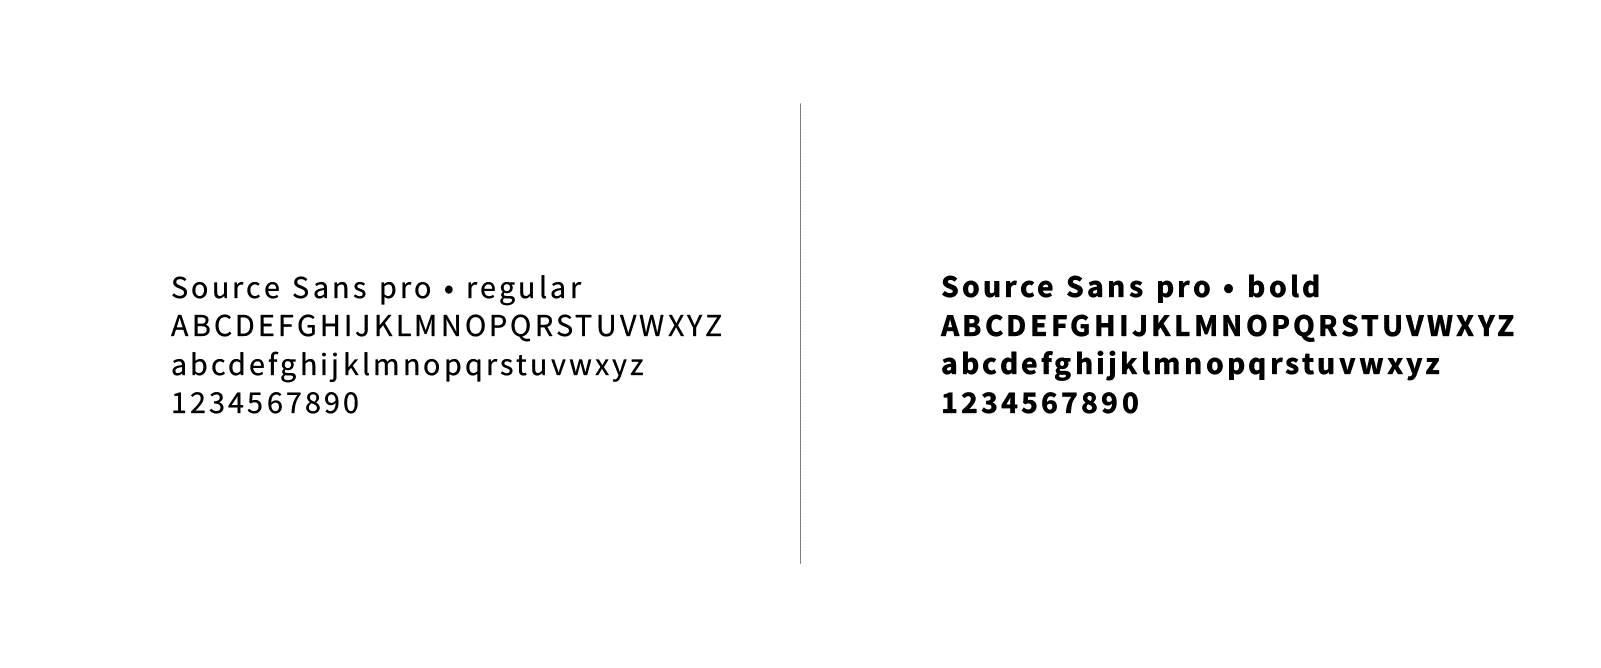 Typographie logo clémentine garnier